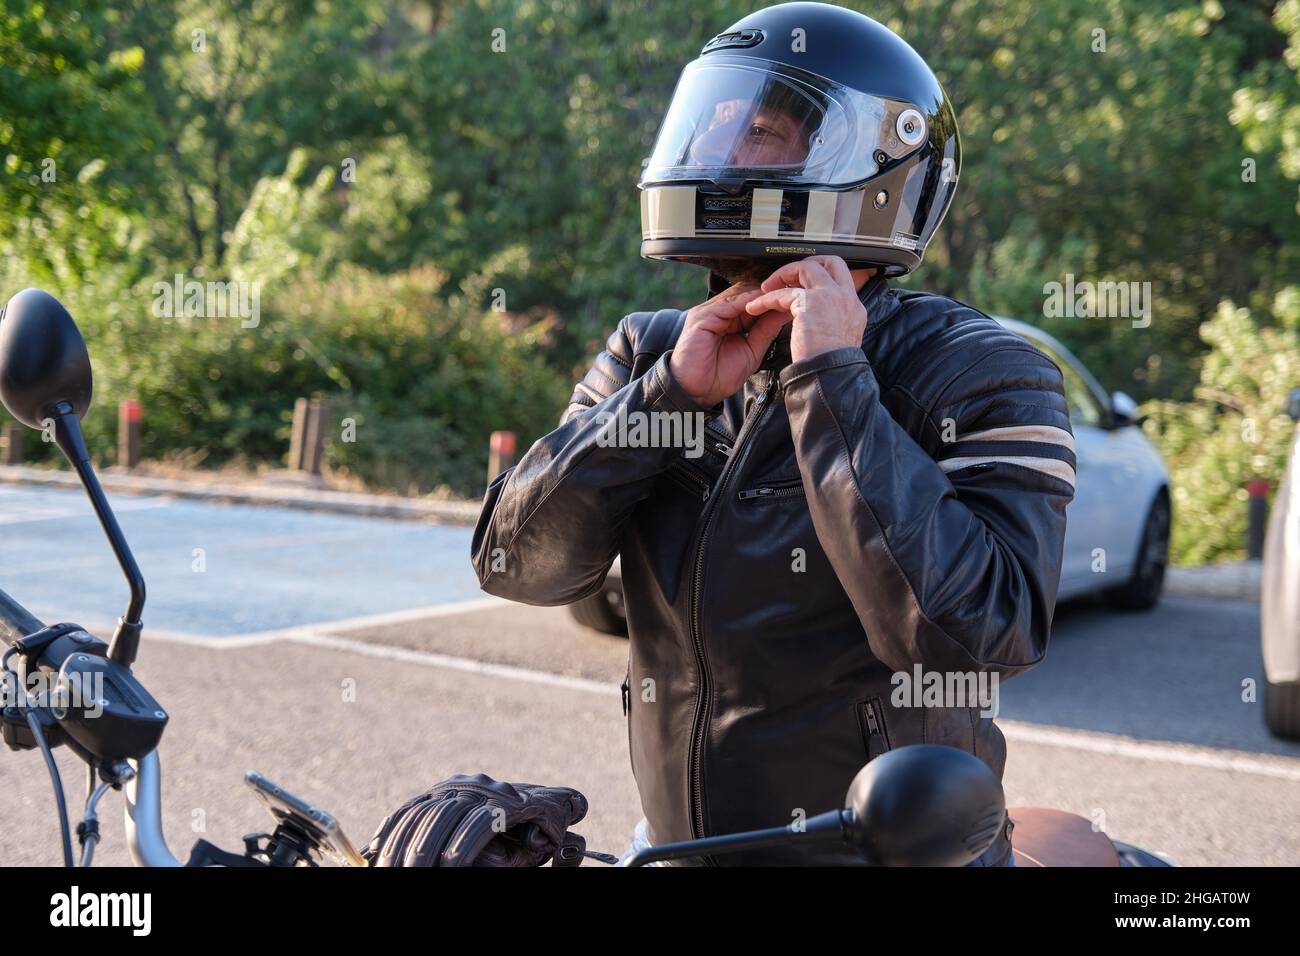 Un motard met un casque avant de monter à moto Banque D'Images